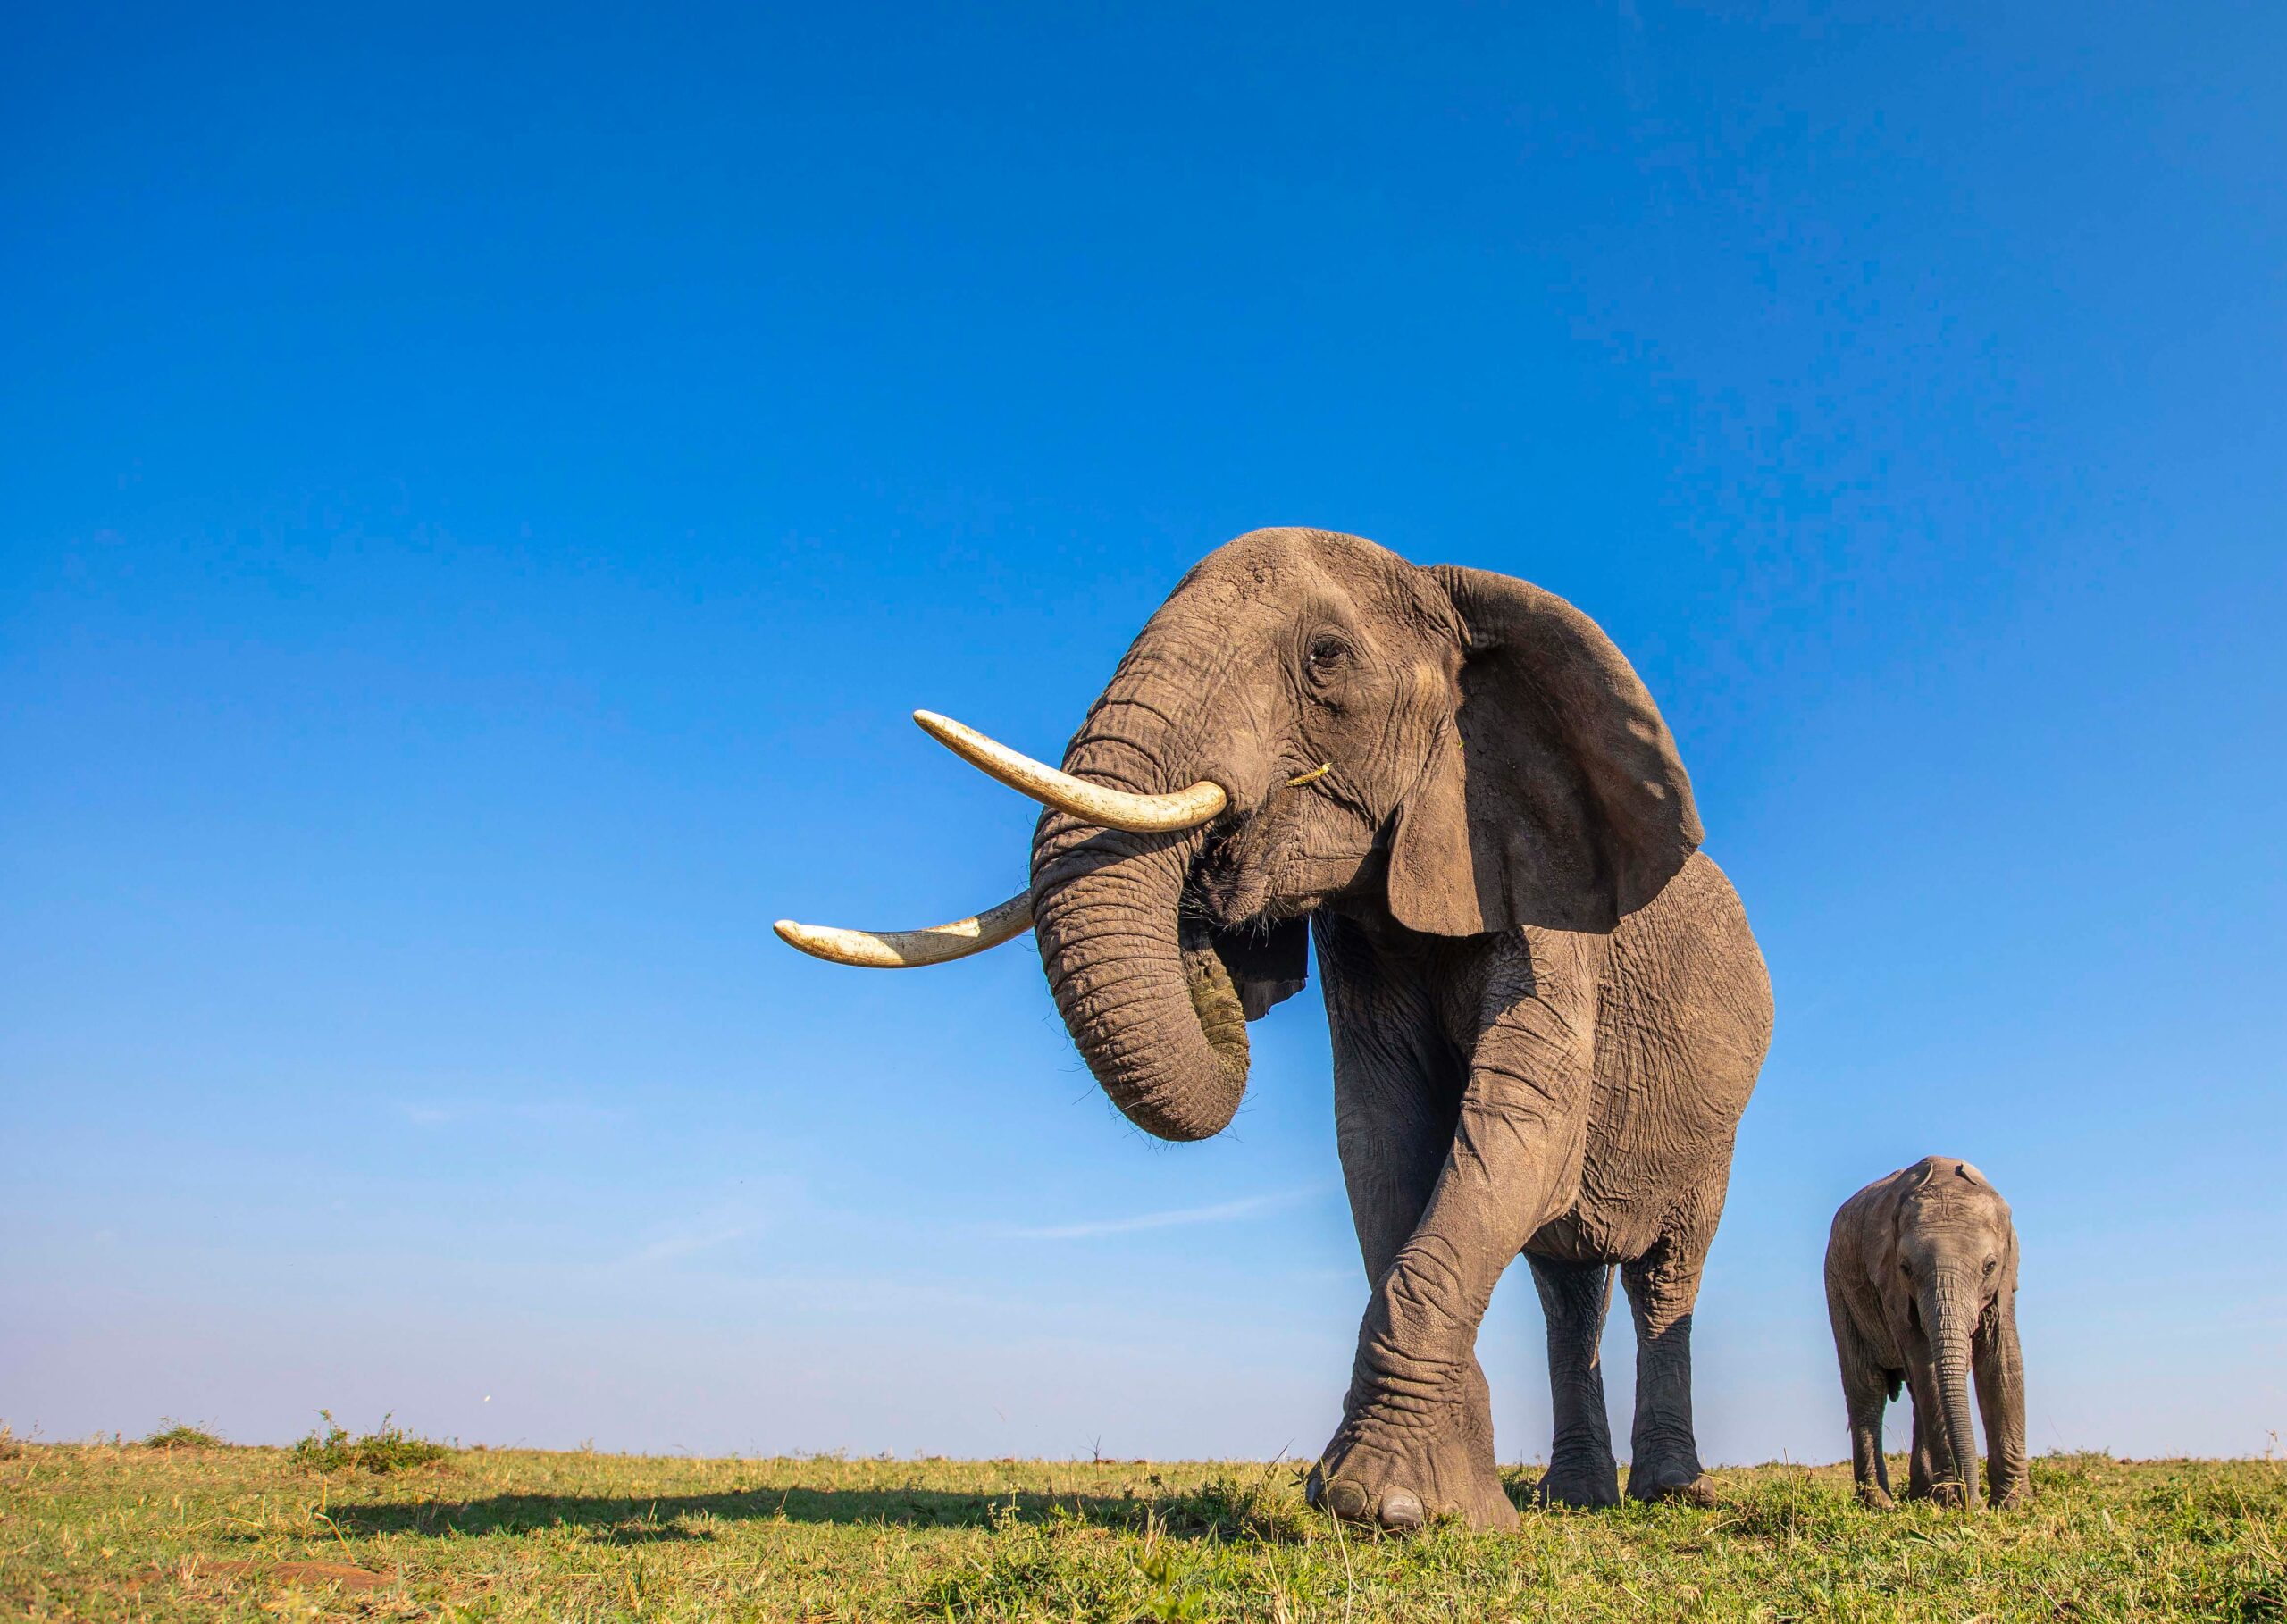 Ziua Internaţională a Elefantului